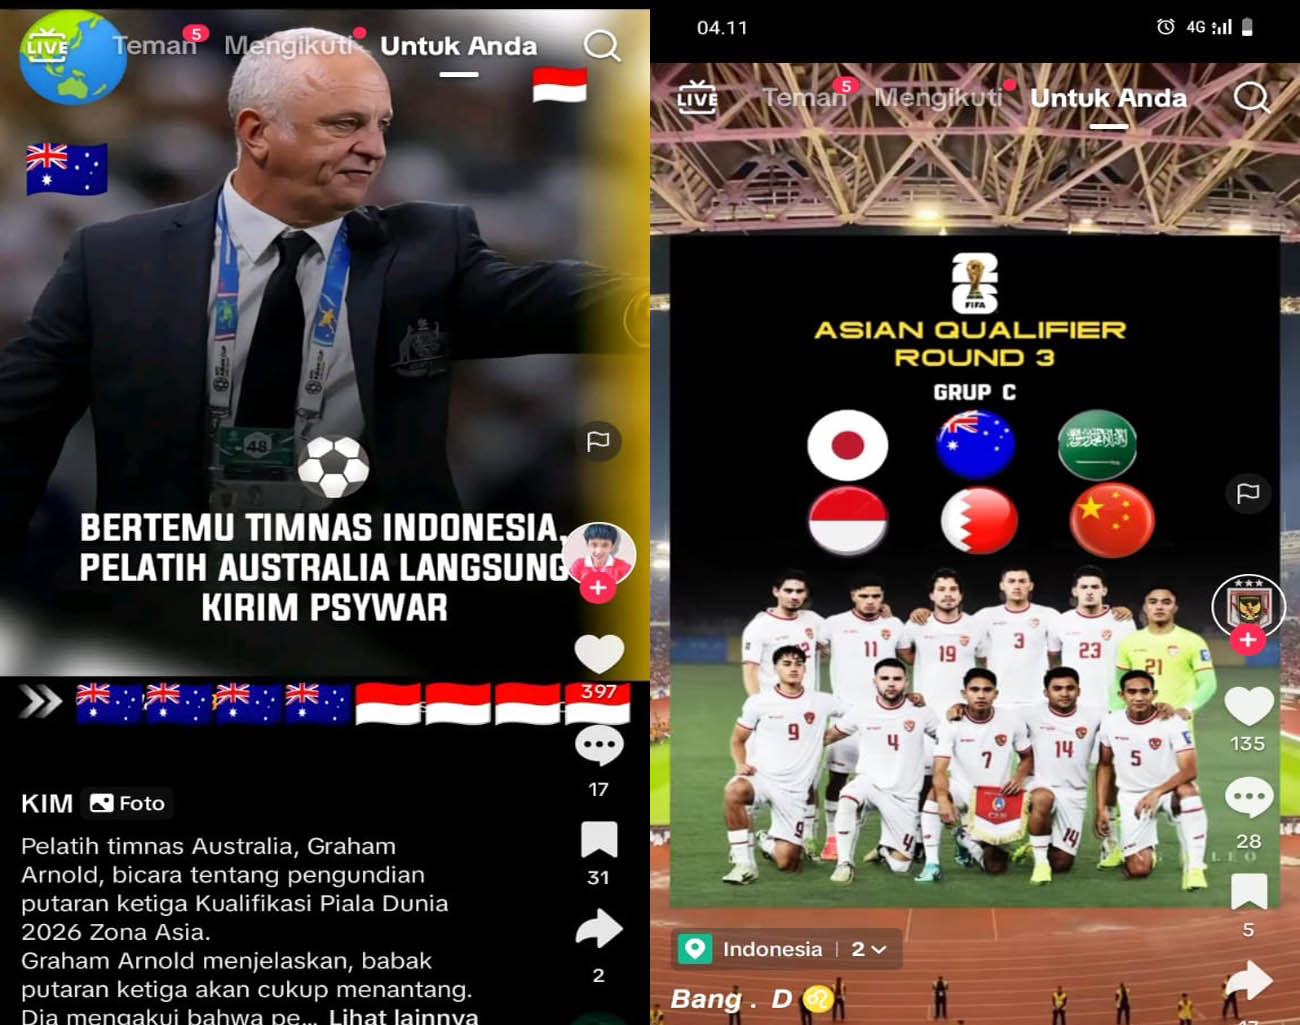 Pelatih Australia Langsung Panik, Indonesia vs Australia, Hasil Drawing Kualifikasi Piala Dunia 2026